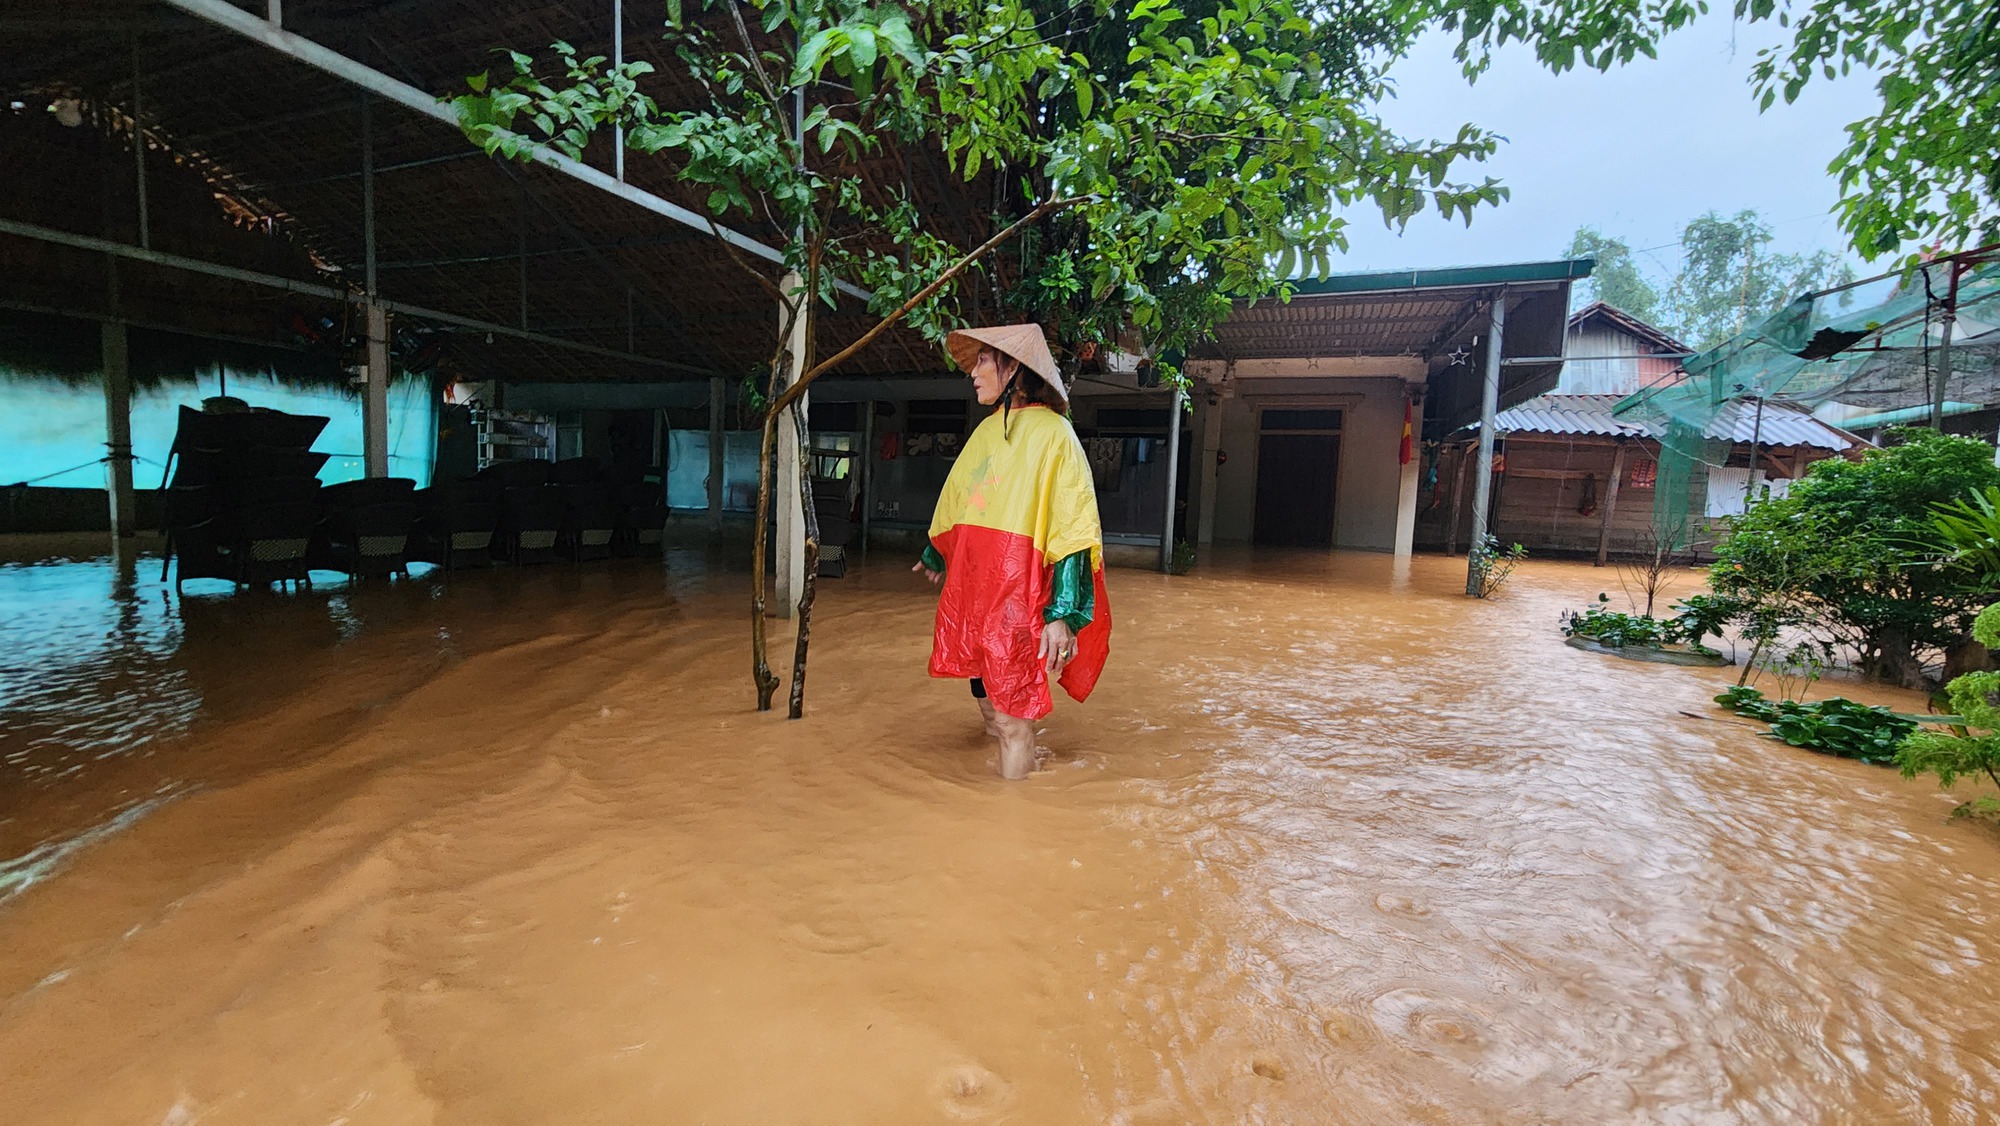 Hà Tĩnh: Quốc lộ 15 A biến 'thành sông' do mưa lớn, nhiều nhà dân ngập sâu - Ảnh 8.